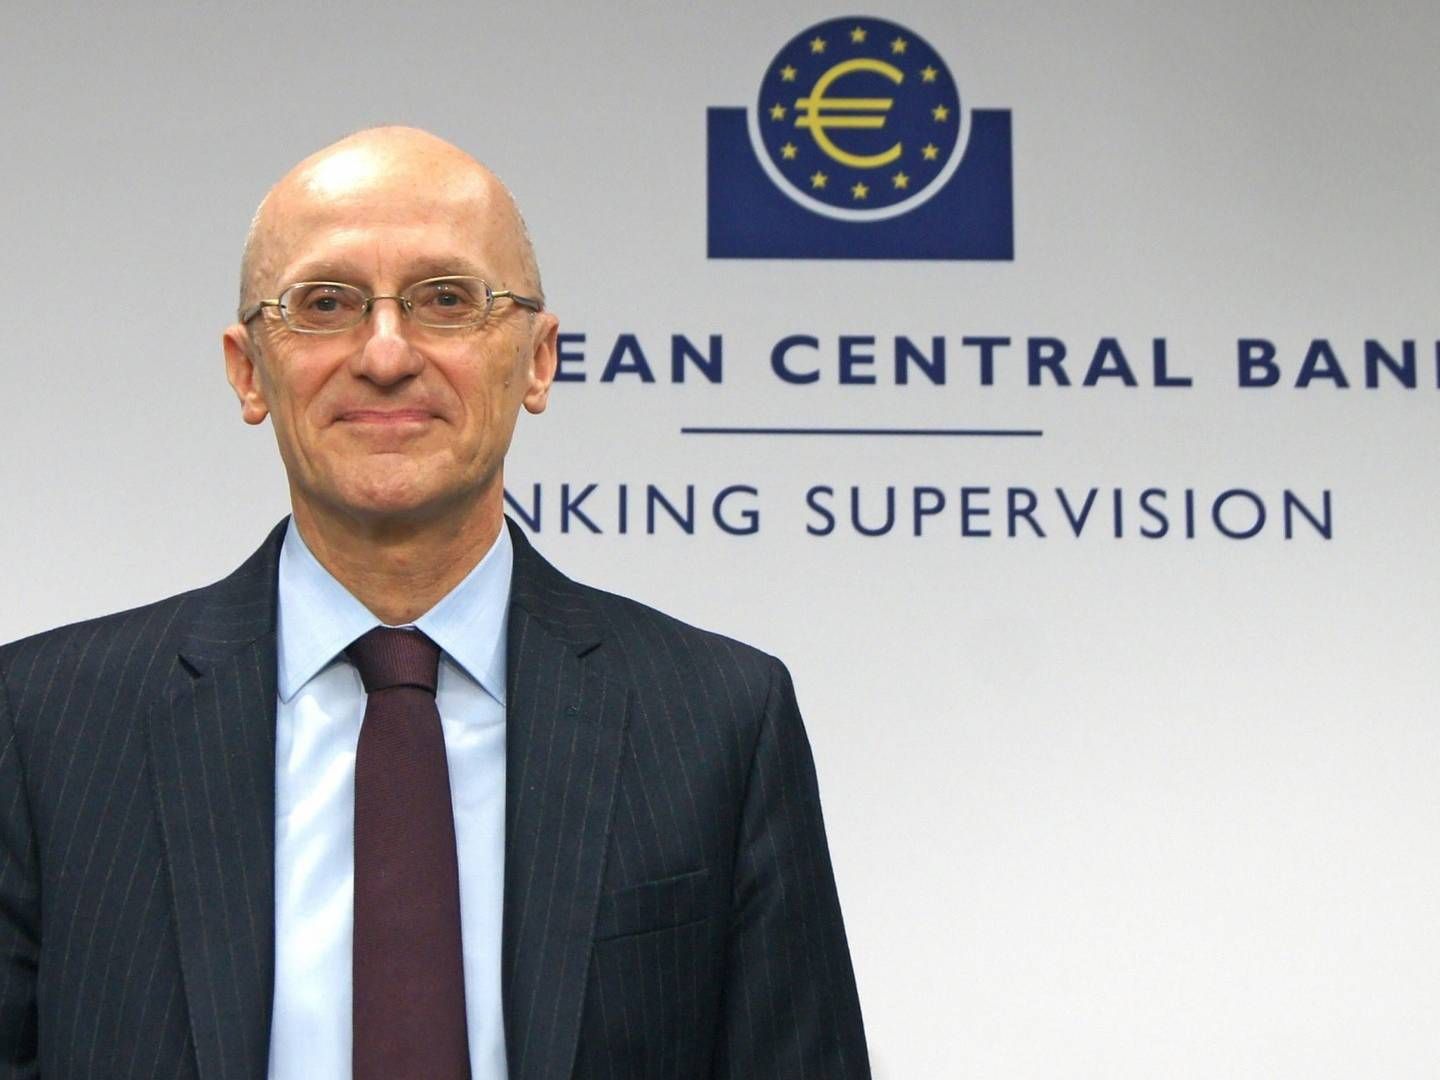 Andrea Enria, Vorsitzender der EZB-Bankenaufsicht | Foto: picture alliance / Wolfgang Minich